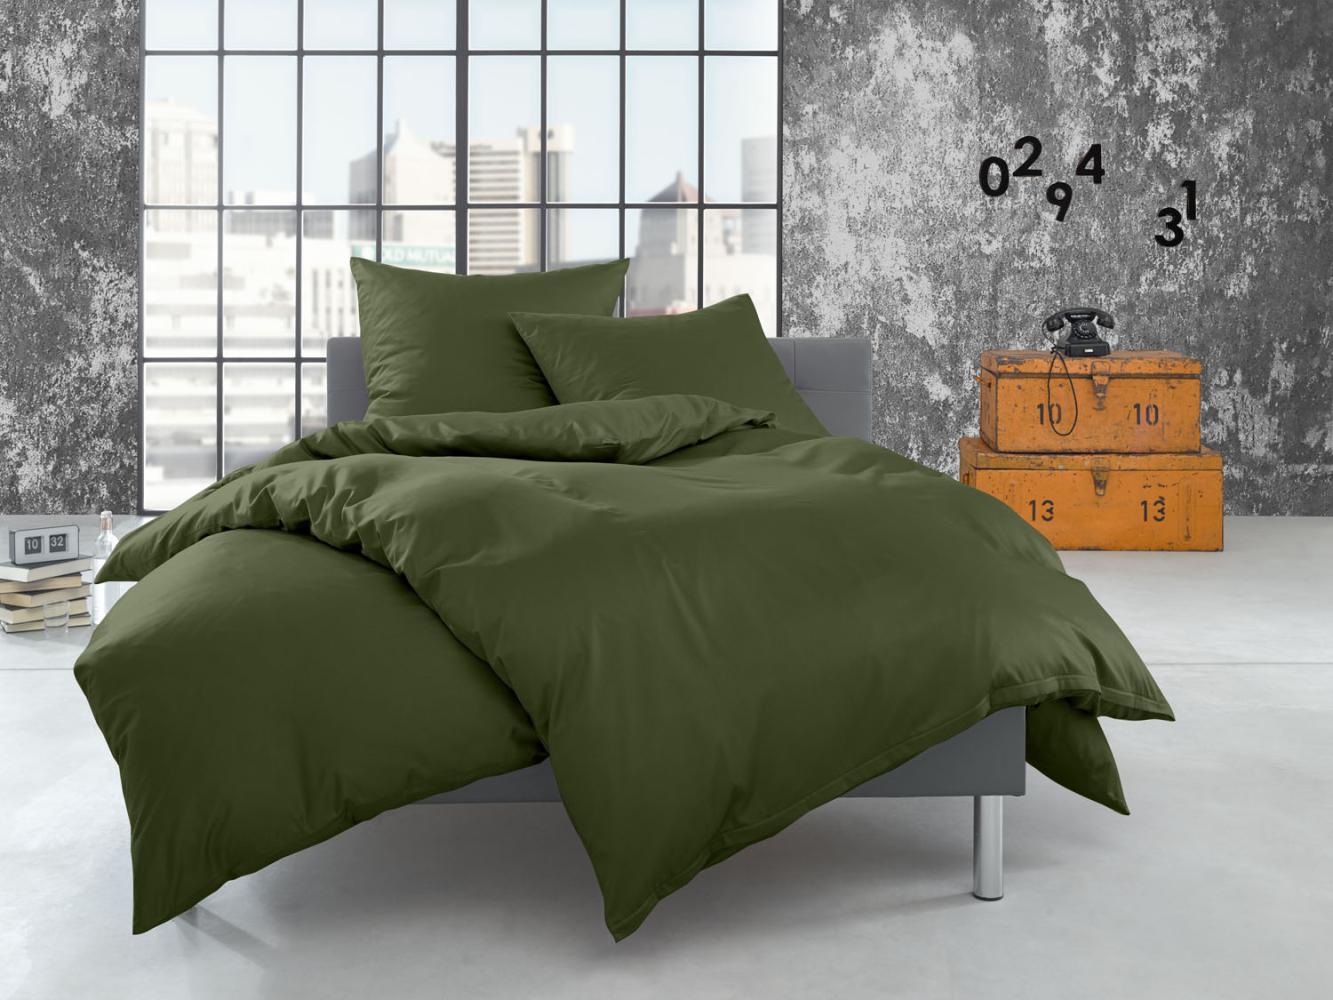 Bettwaesche-mit-Stil Flanell Bettwäsche uni / einfarbig dunkelgrün (oliv) Garnitur 135x200 + 80x80 cm Bild 1